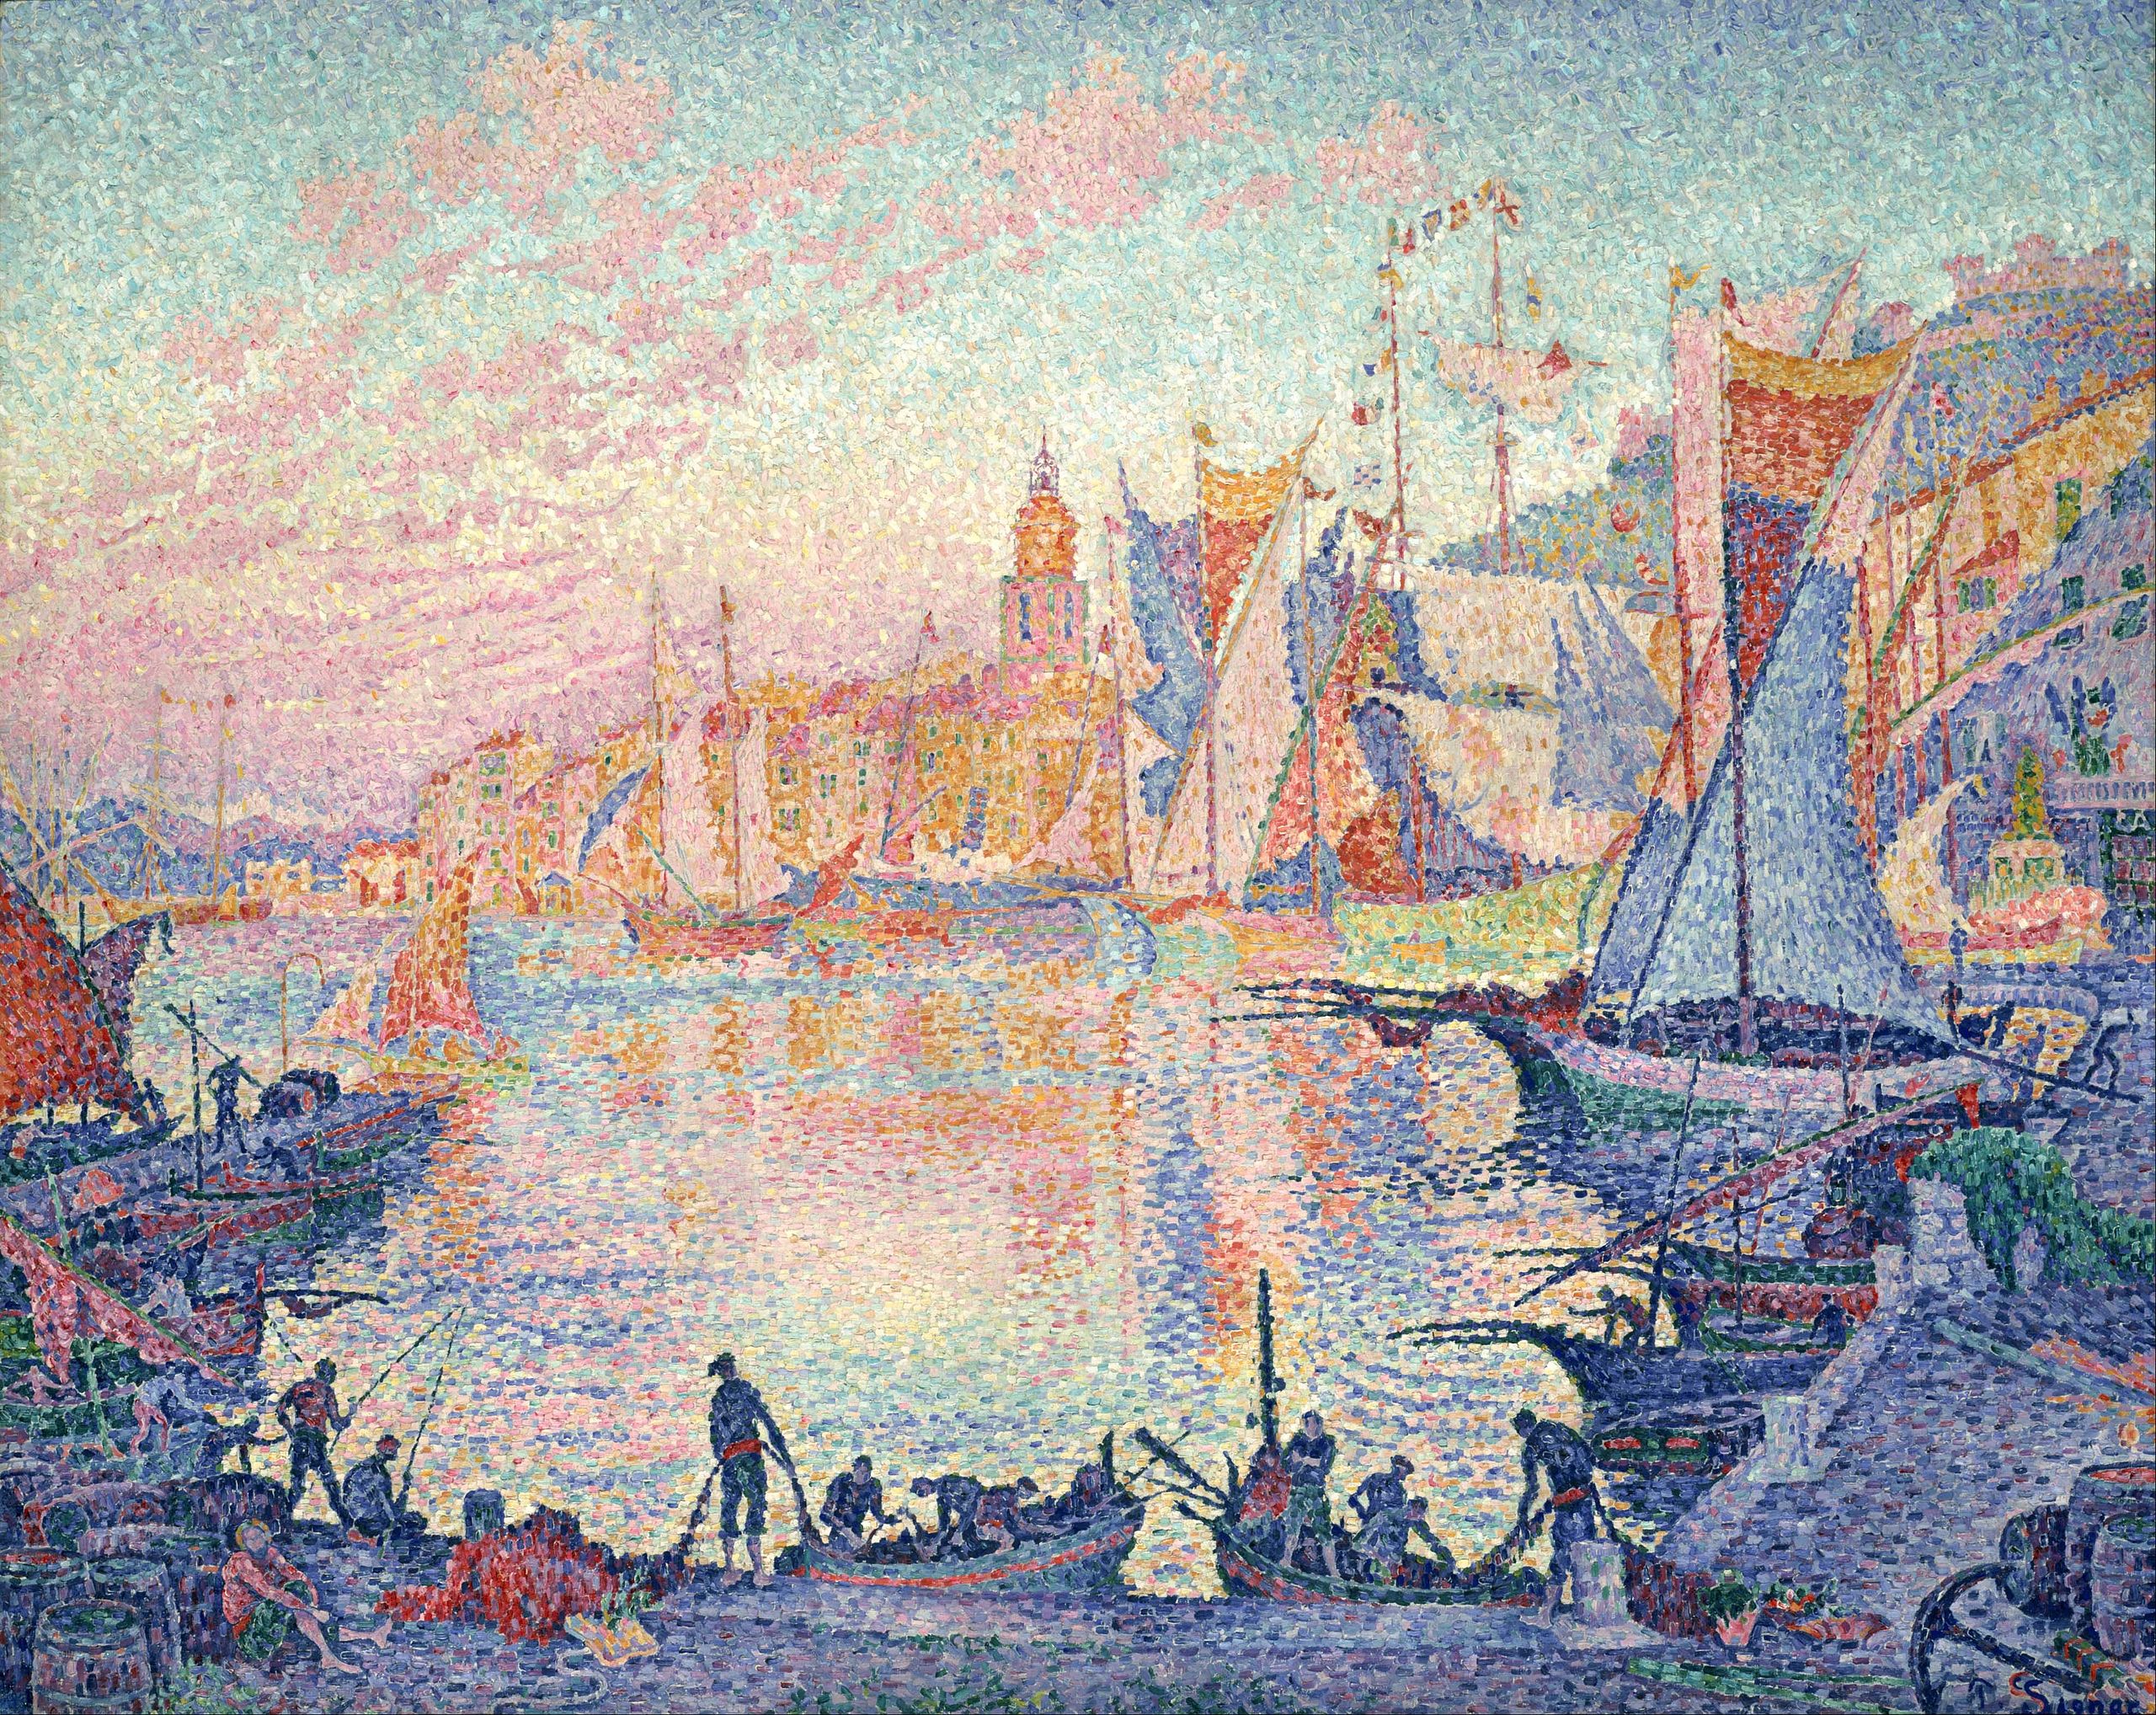 De haven van Saint-Tropez by Paul Signac - 1901-1902 - 131 x 161.5 cm 